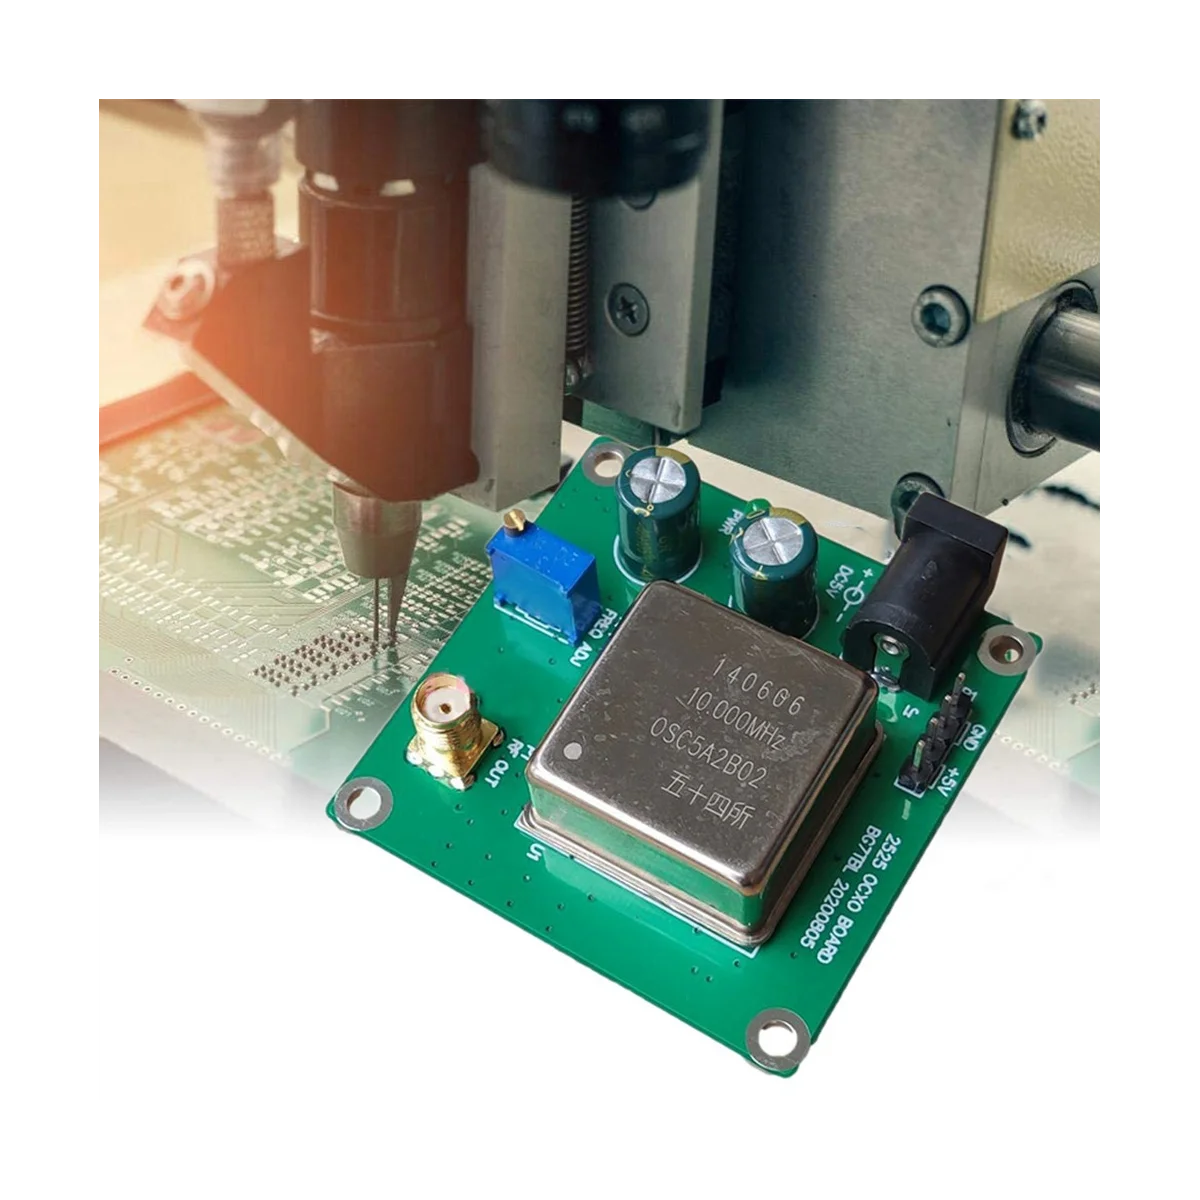 

10M OCXO частота Стандартная плата 10 МГц/13 дБм постоянная температура Кристальный осциллятор Синусоидальная мощность